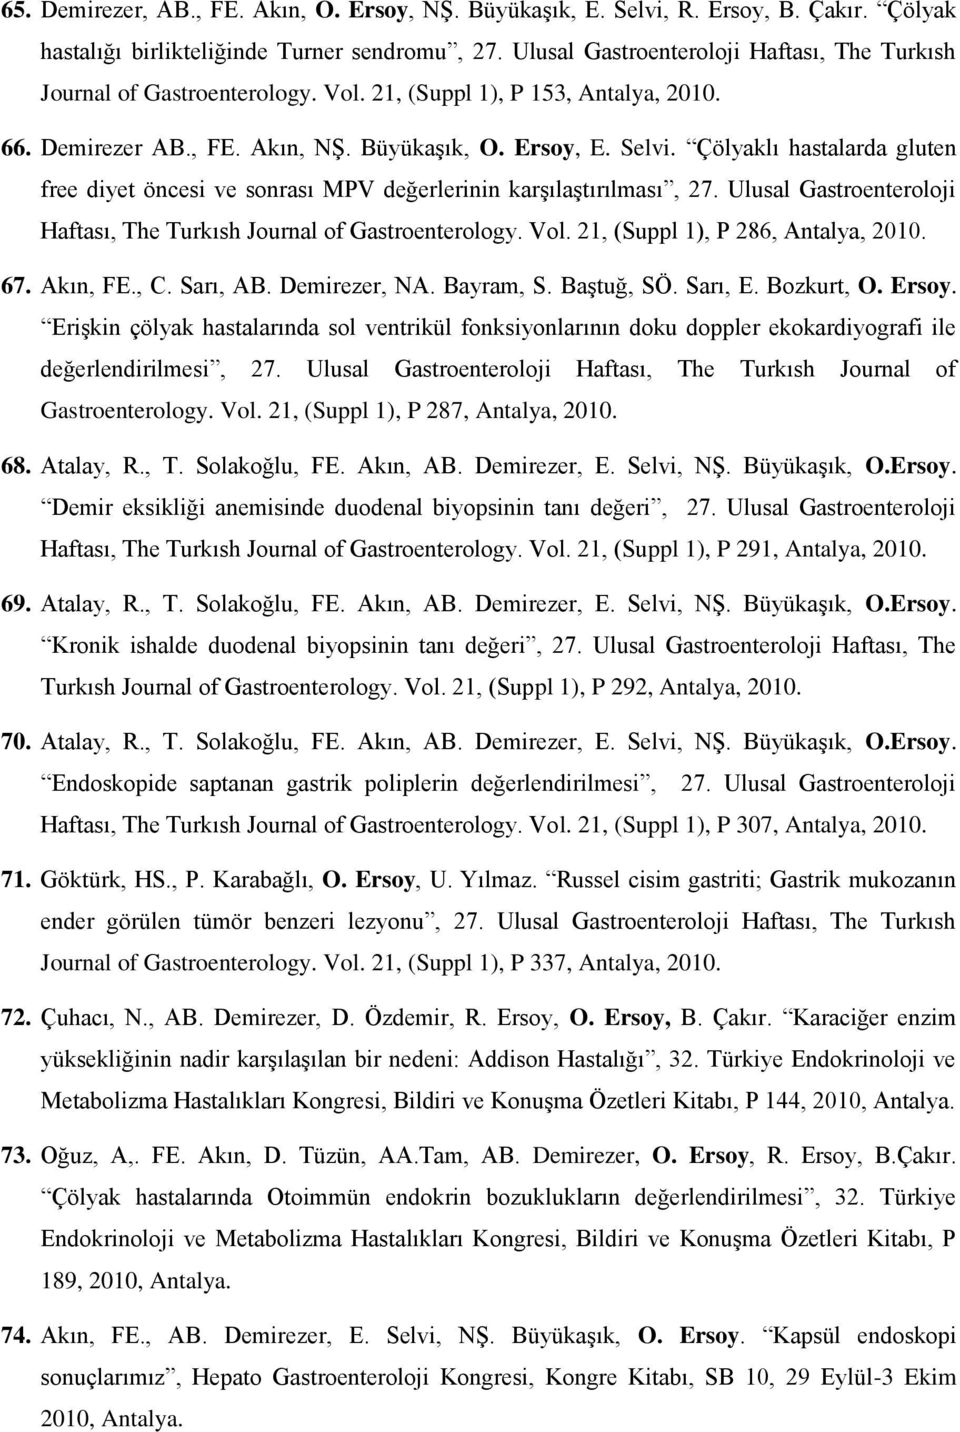 Çölyaklı hastalarda gluten free diyet öncesi ve sonrası MPV değerlerinin karşılaştırılması, 27. Ulusal Gastroenteroloji Haftası, The Turkısh Journal of Gastroenterology. Vol.